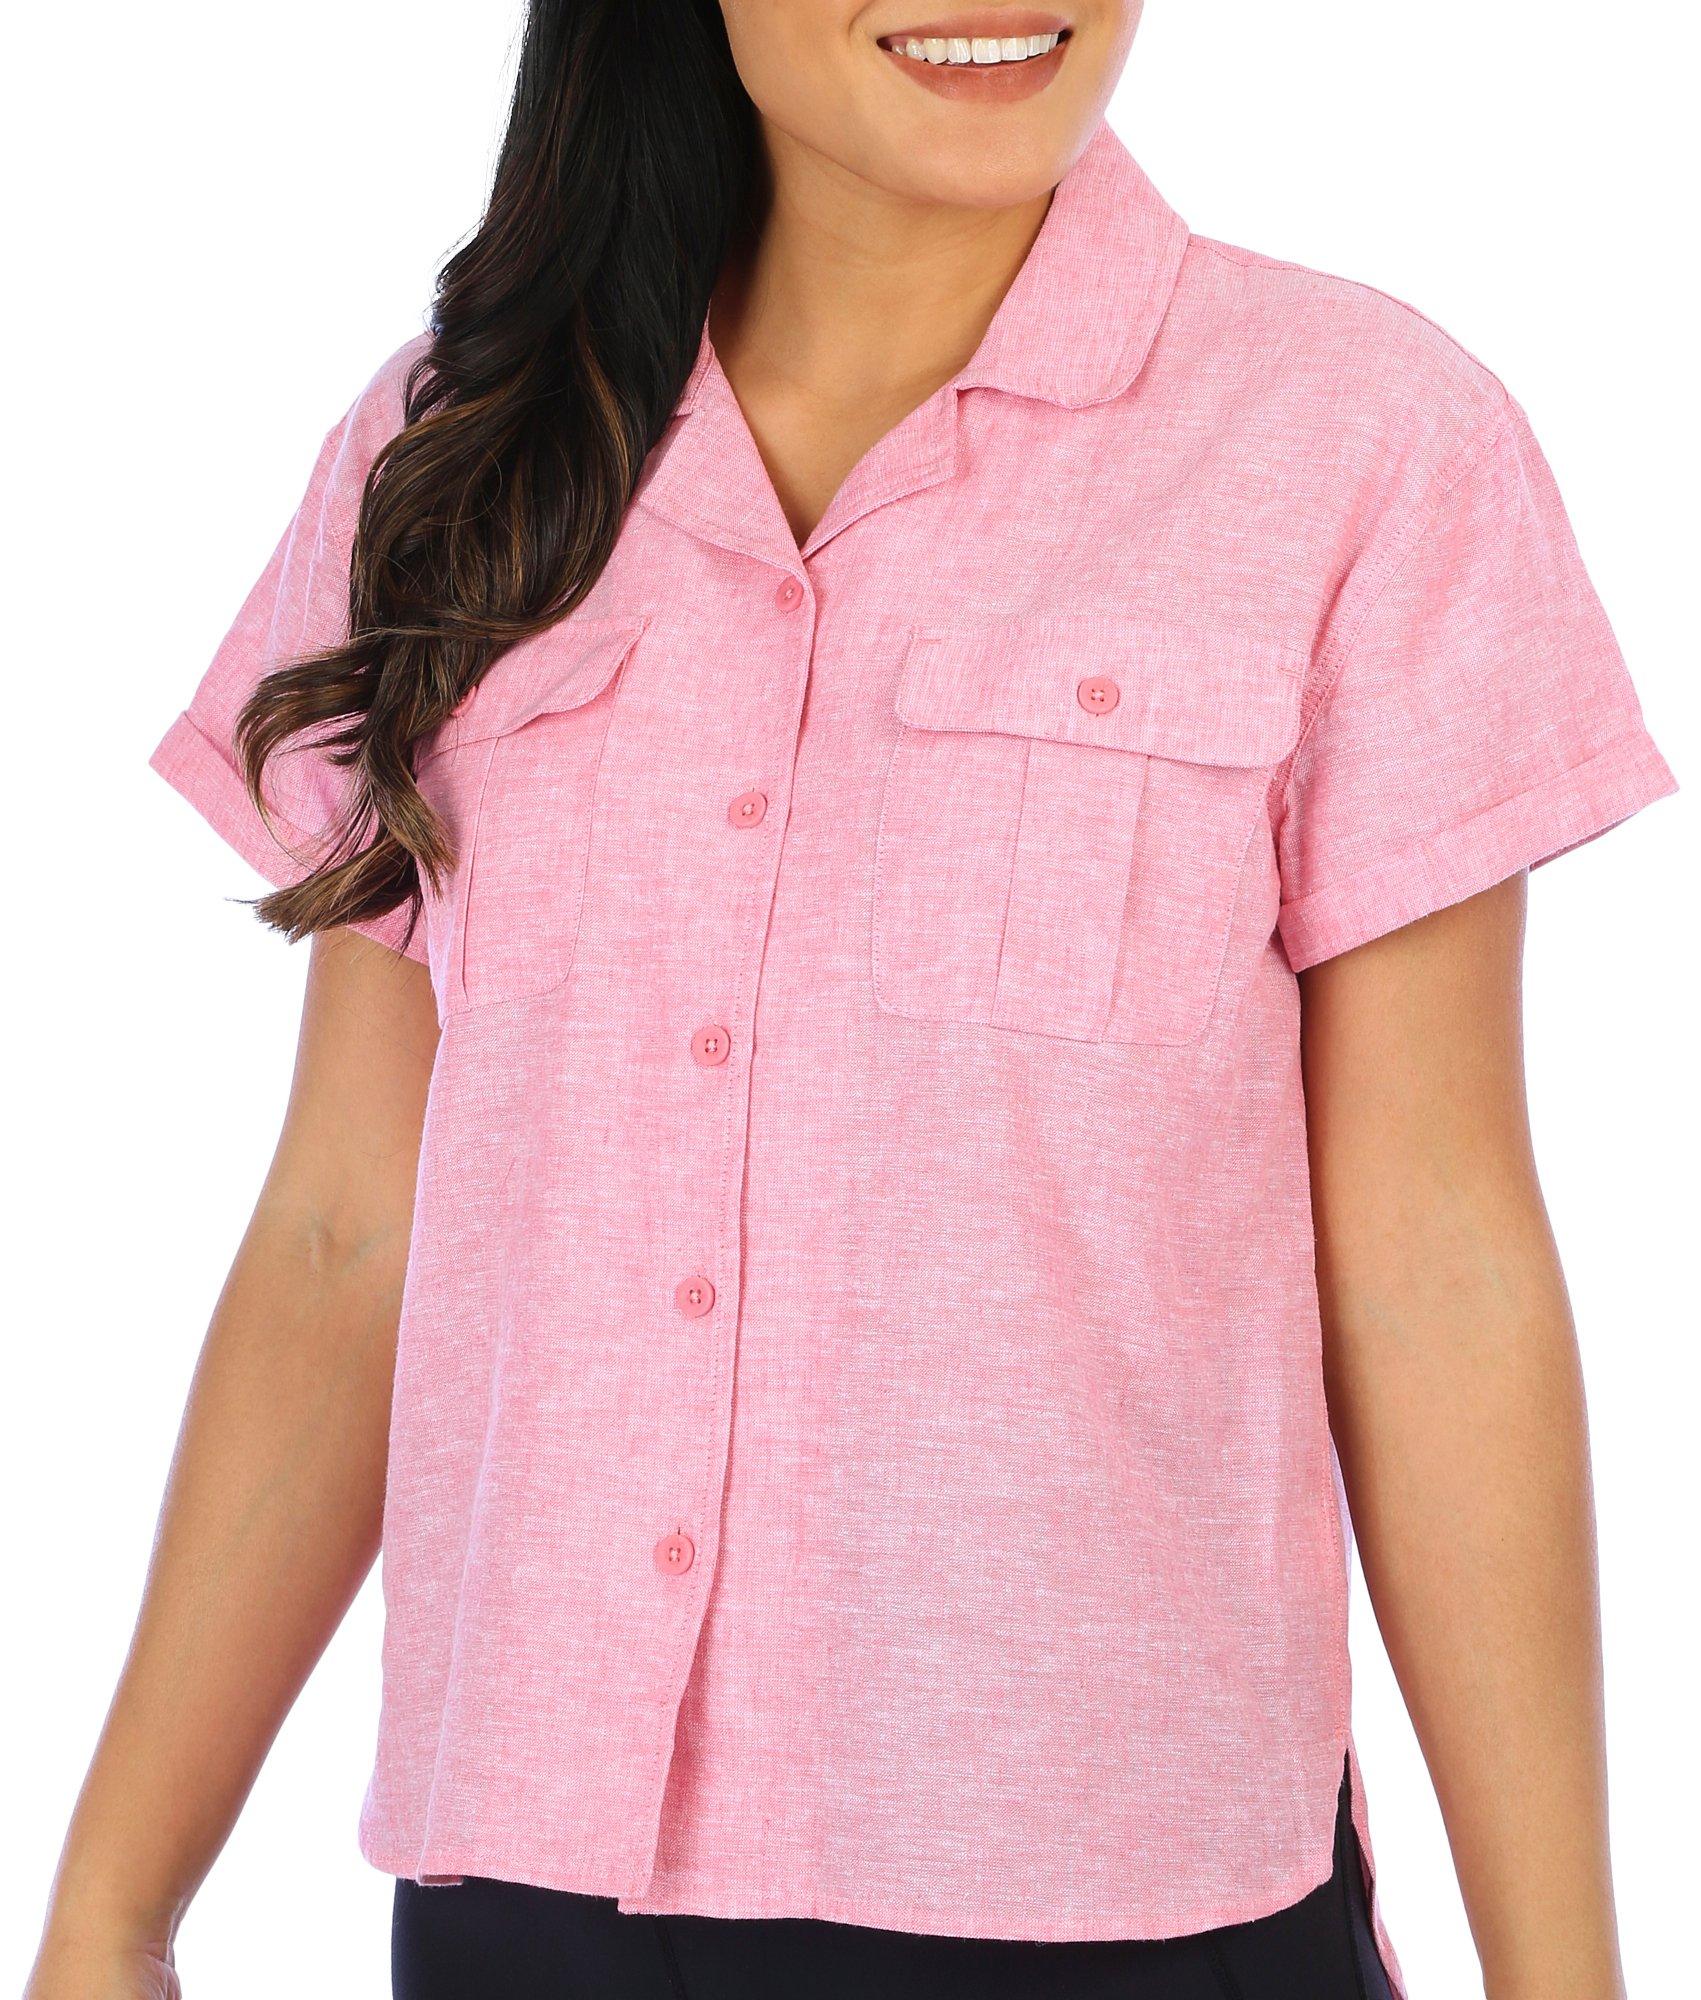 Womens Short Sleeve Cotton Linen Shirt